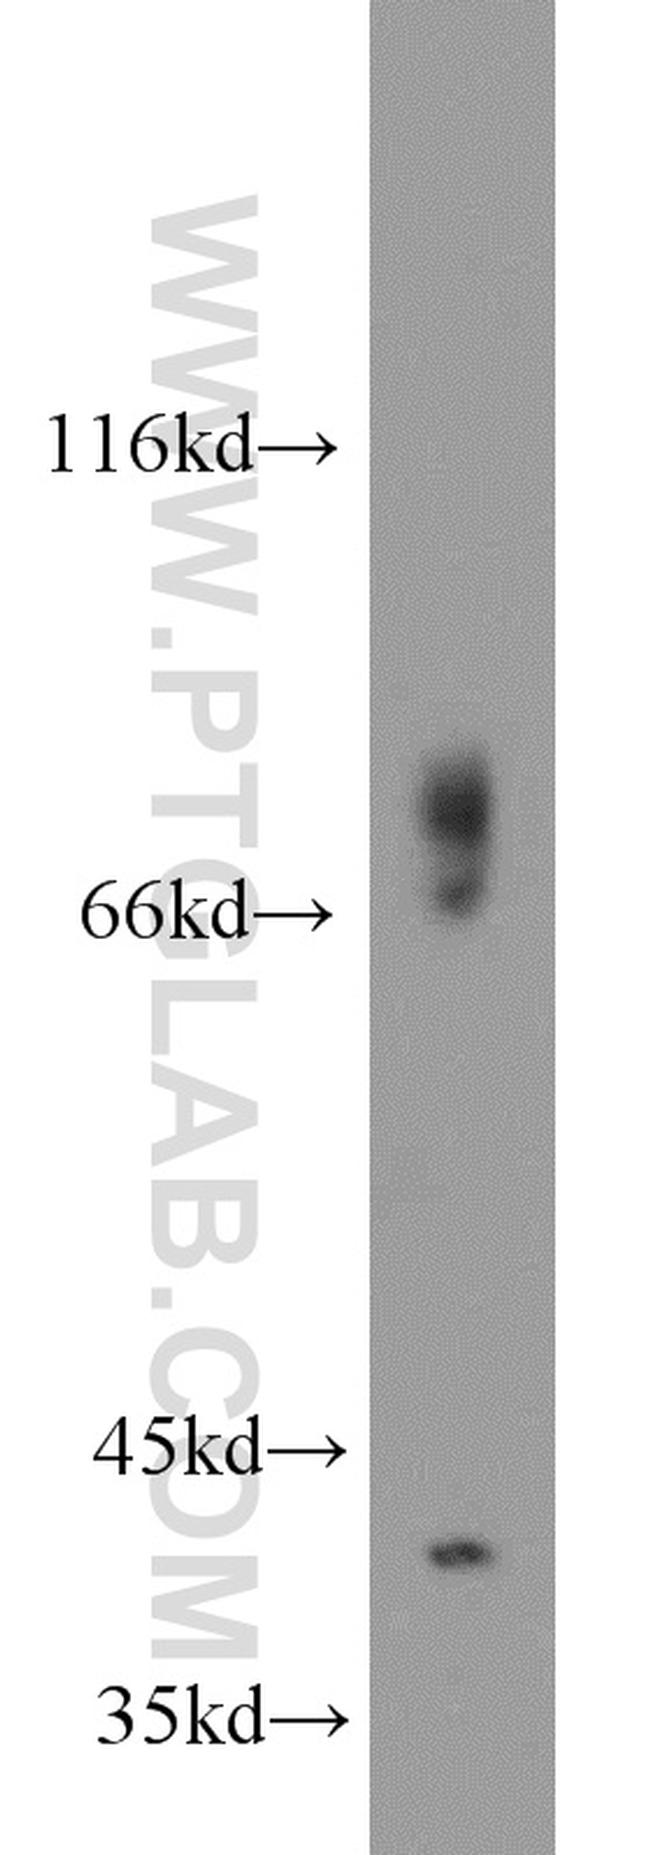 GSNOR/ADH5 Antibody in Western Blot (WB)